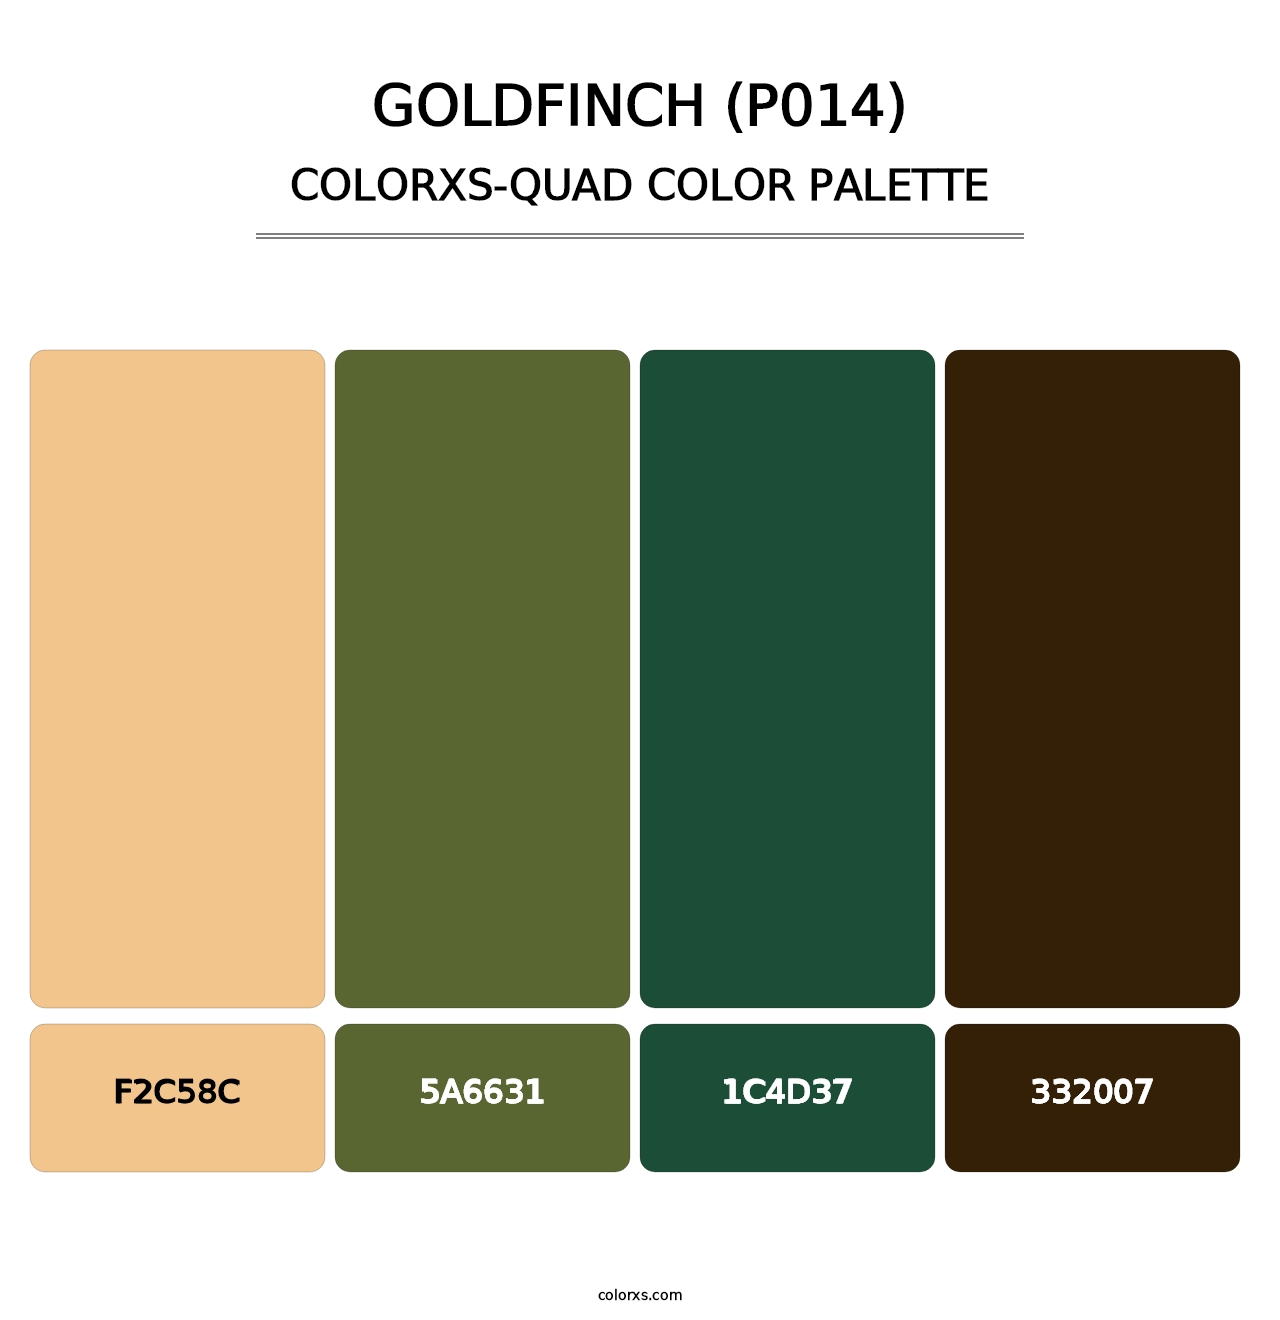 Goldfinch (P014) - Colorxs Quad Palette